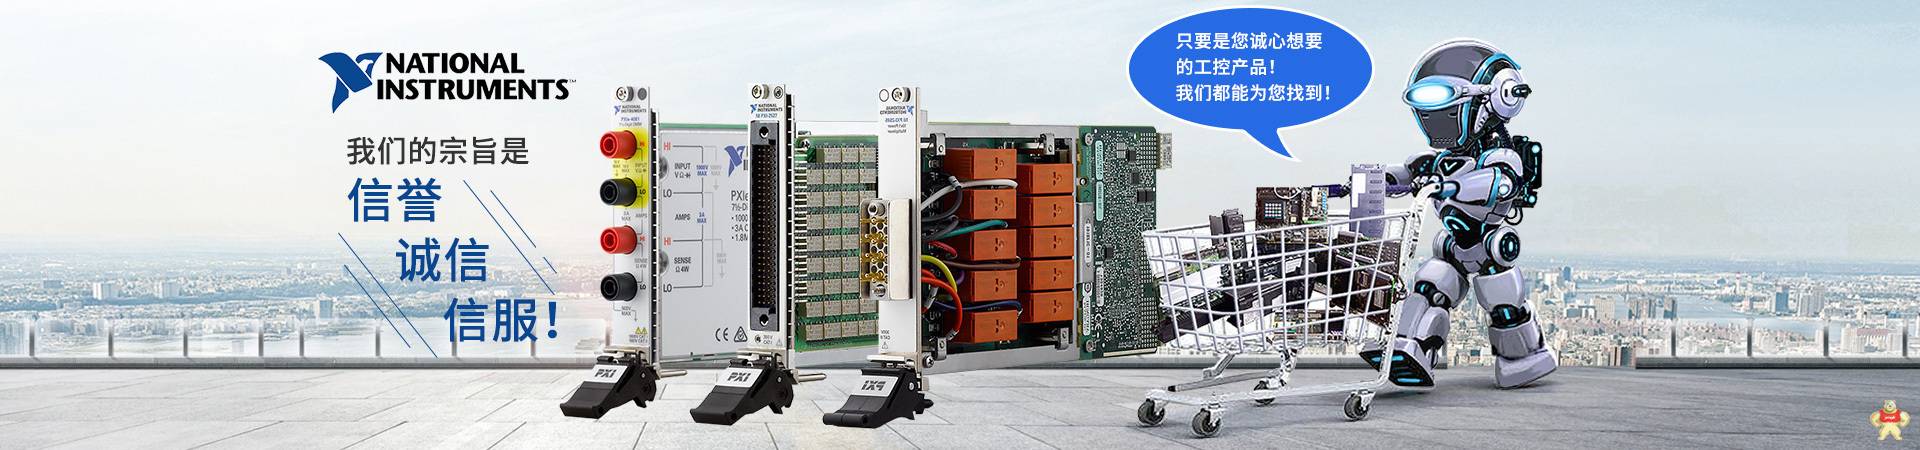 NI PCI-6034E模拟输入数据采集卡 电线缆 控制器 输入输出模块 卡件处理器 机箱 库存有货 质保一年 